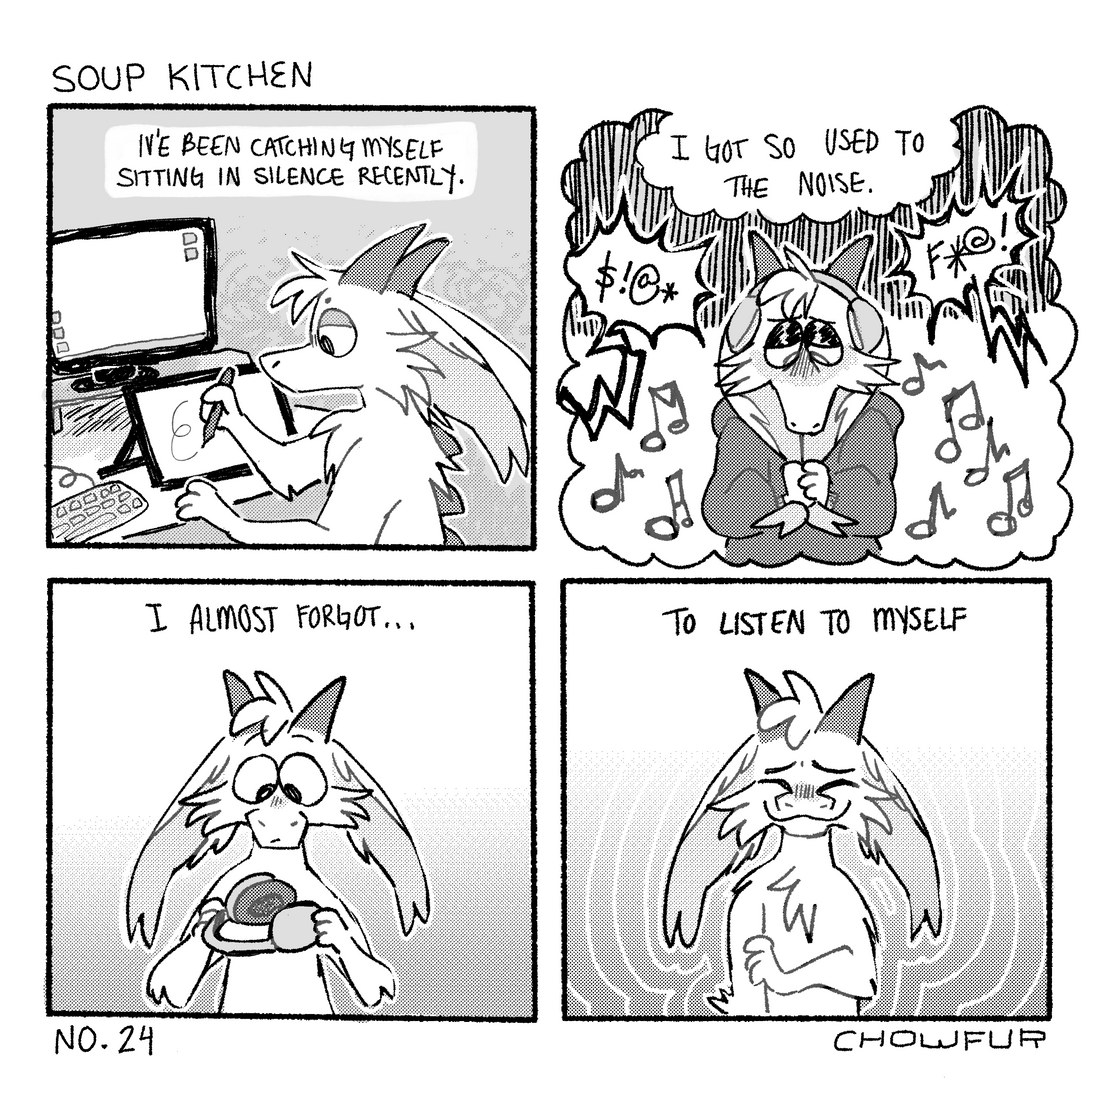 Soup Kitchen {No. 24}